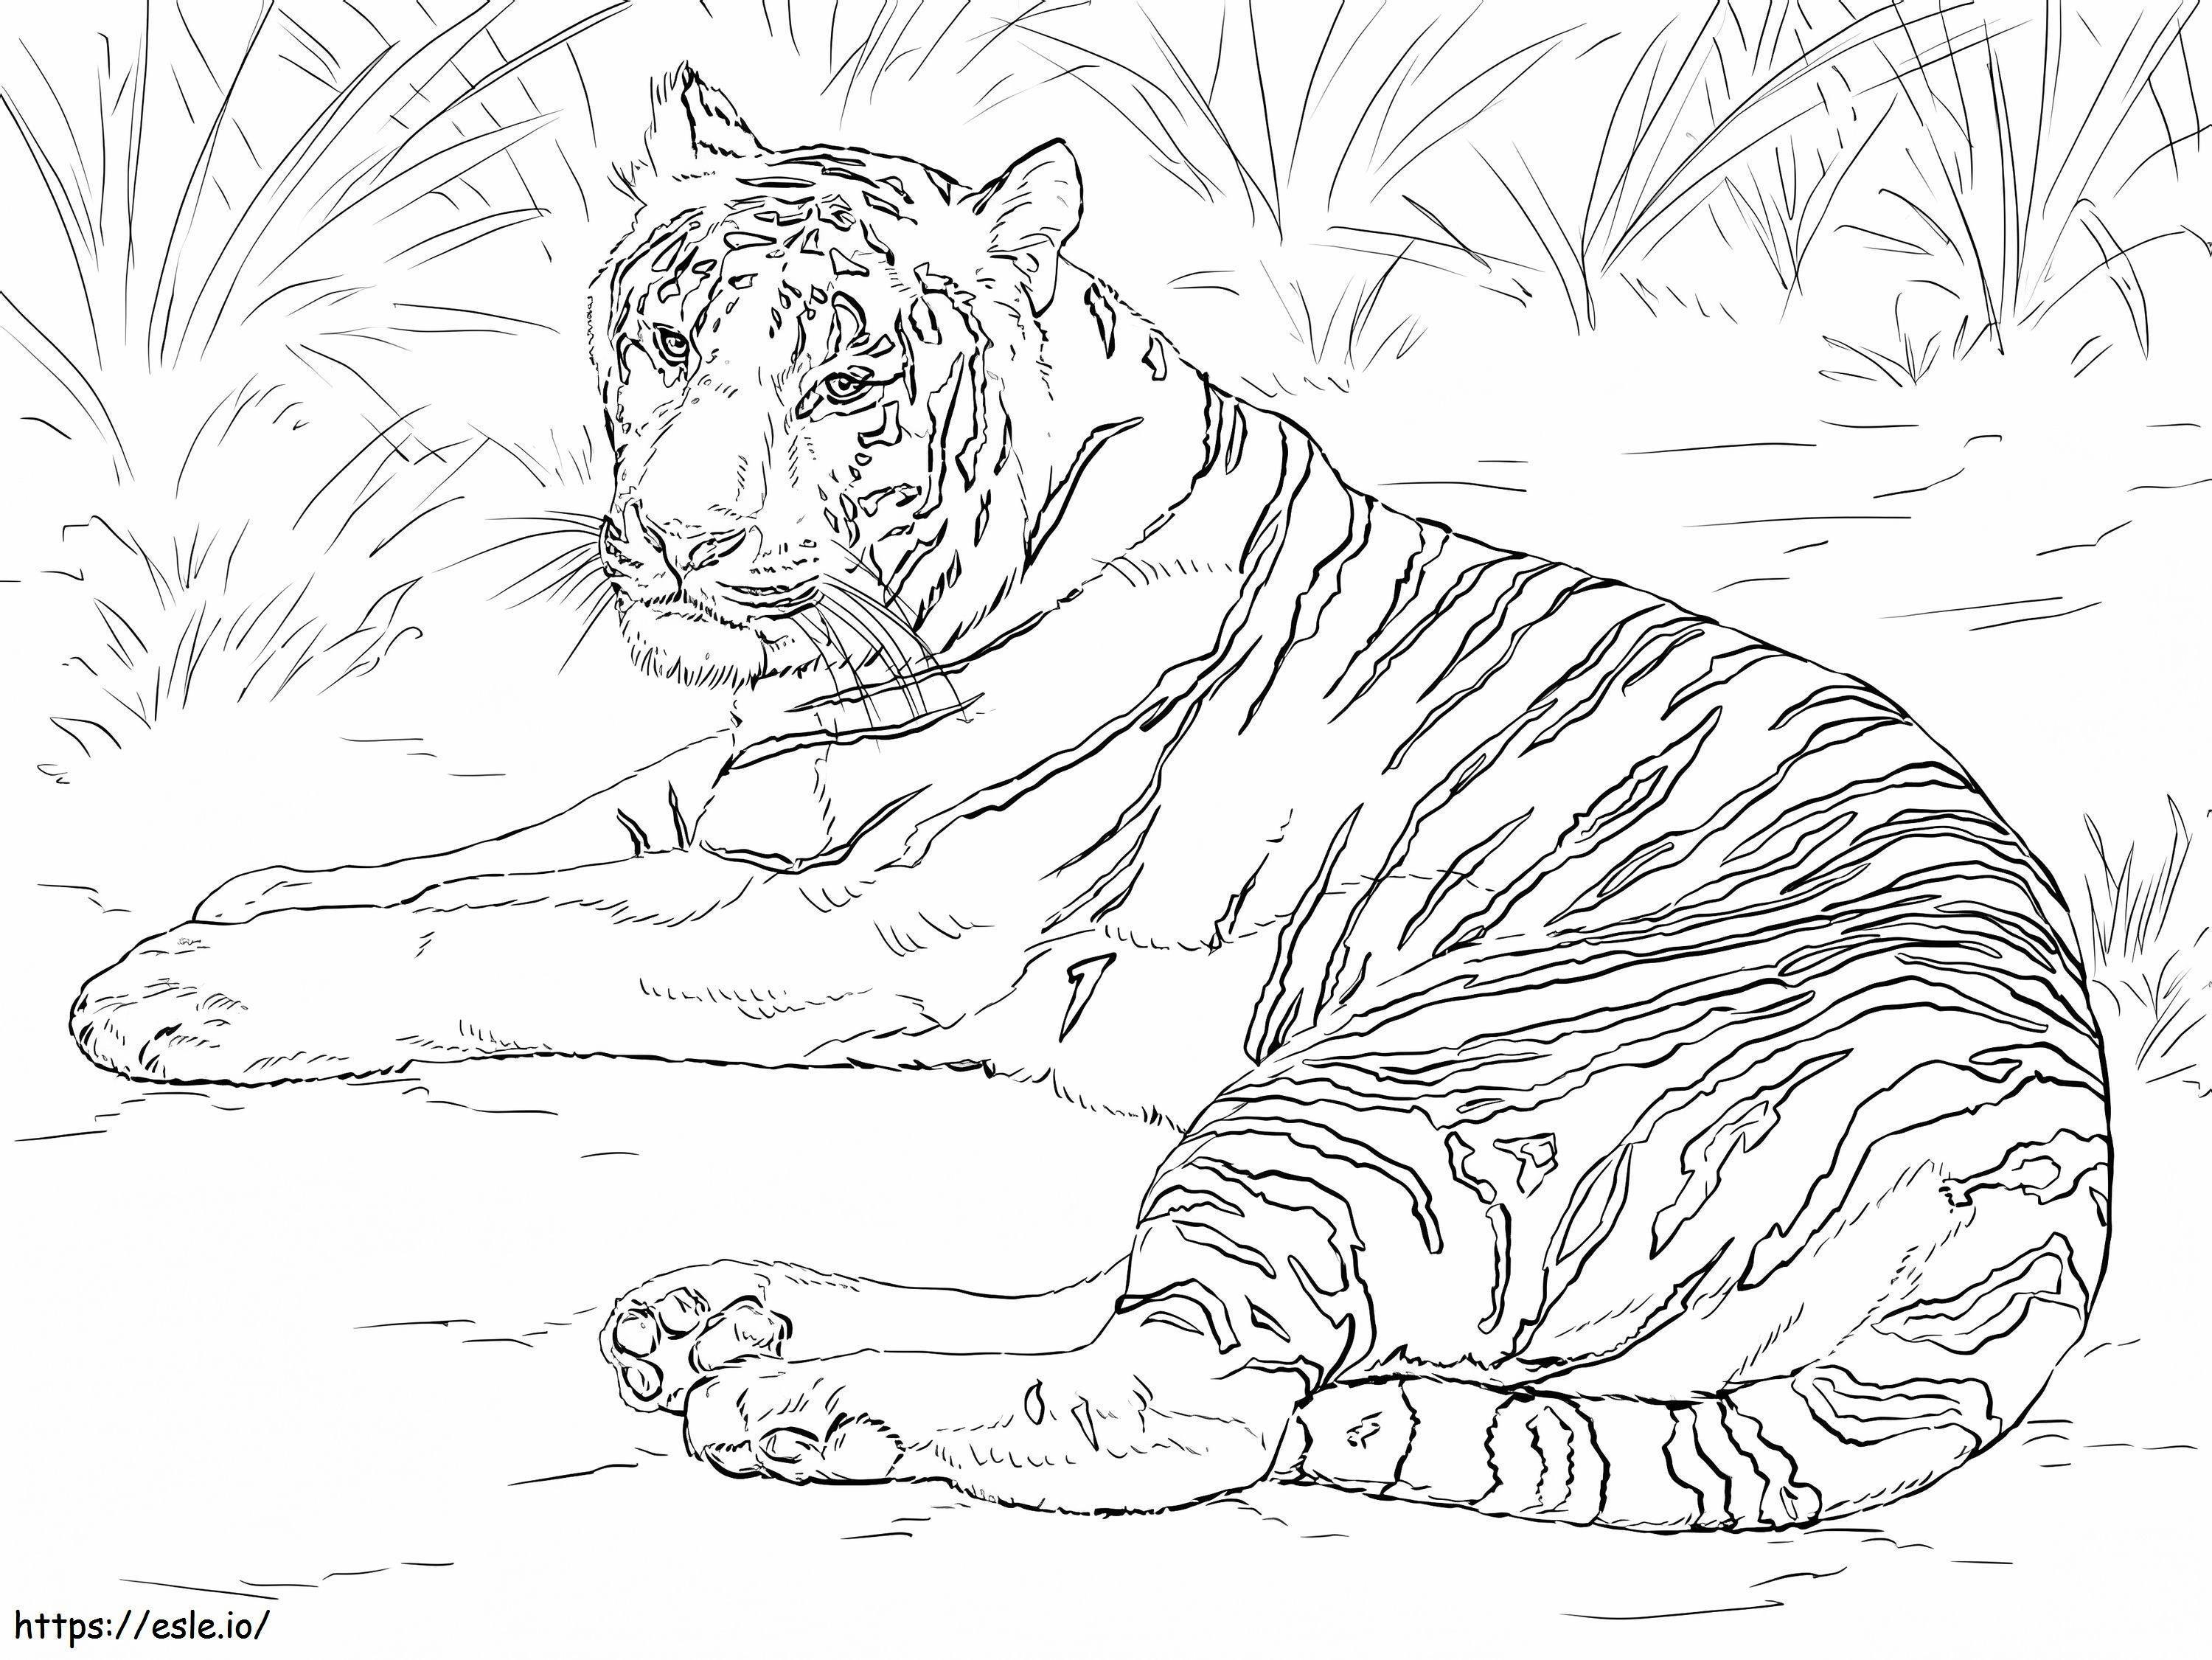 Tigre siberiana realistica da colorare